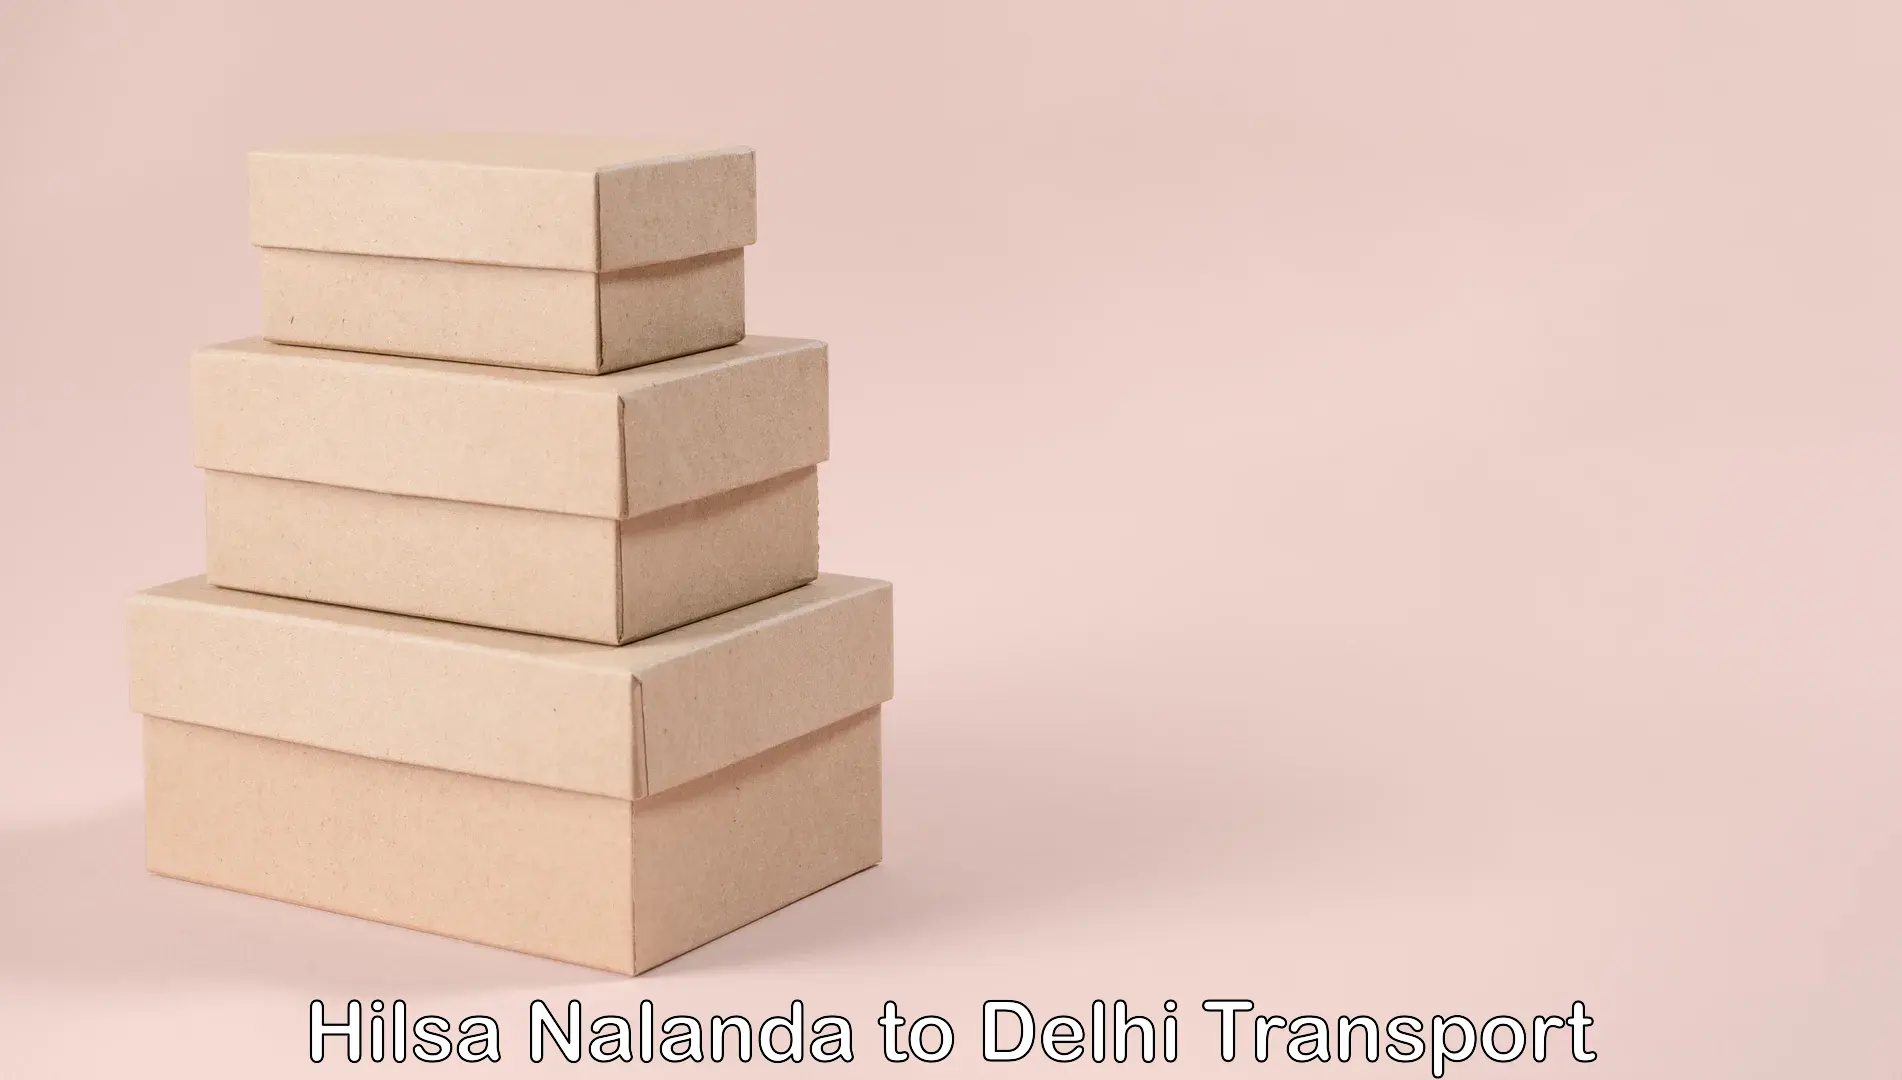 Daily parcel service transport Hilsa Nalanda to NCR